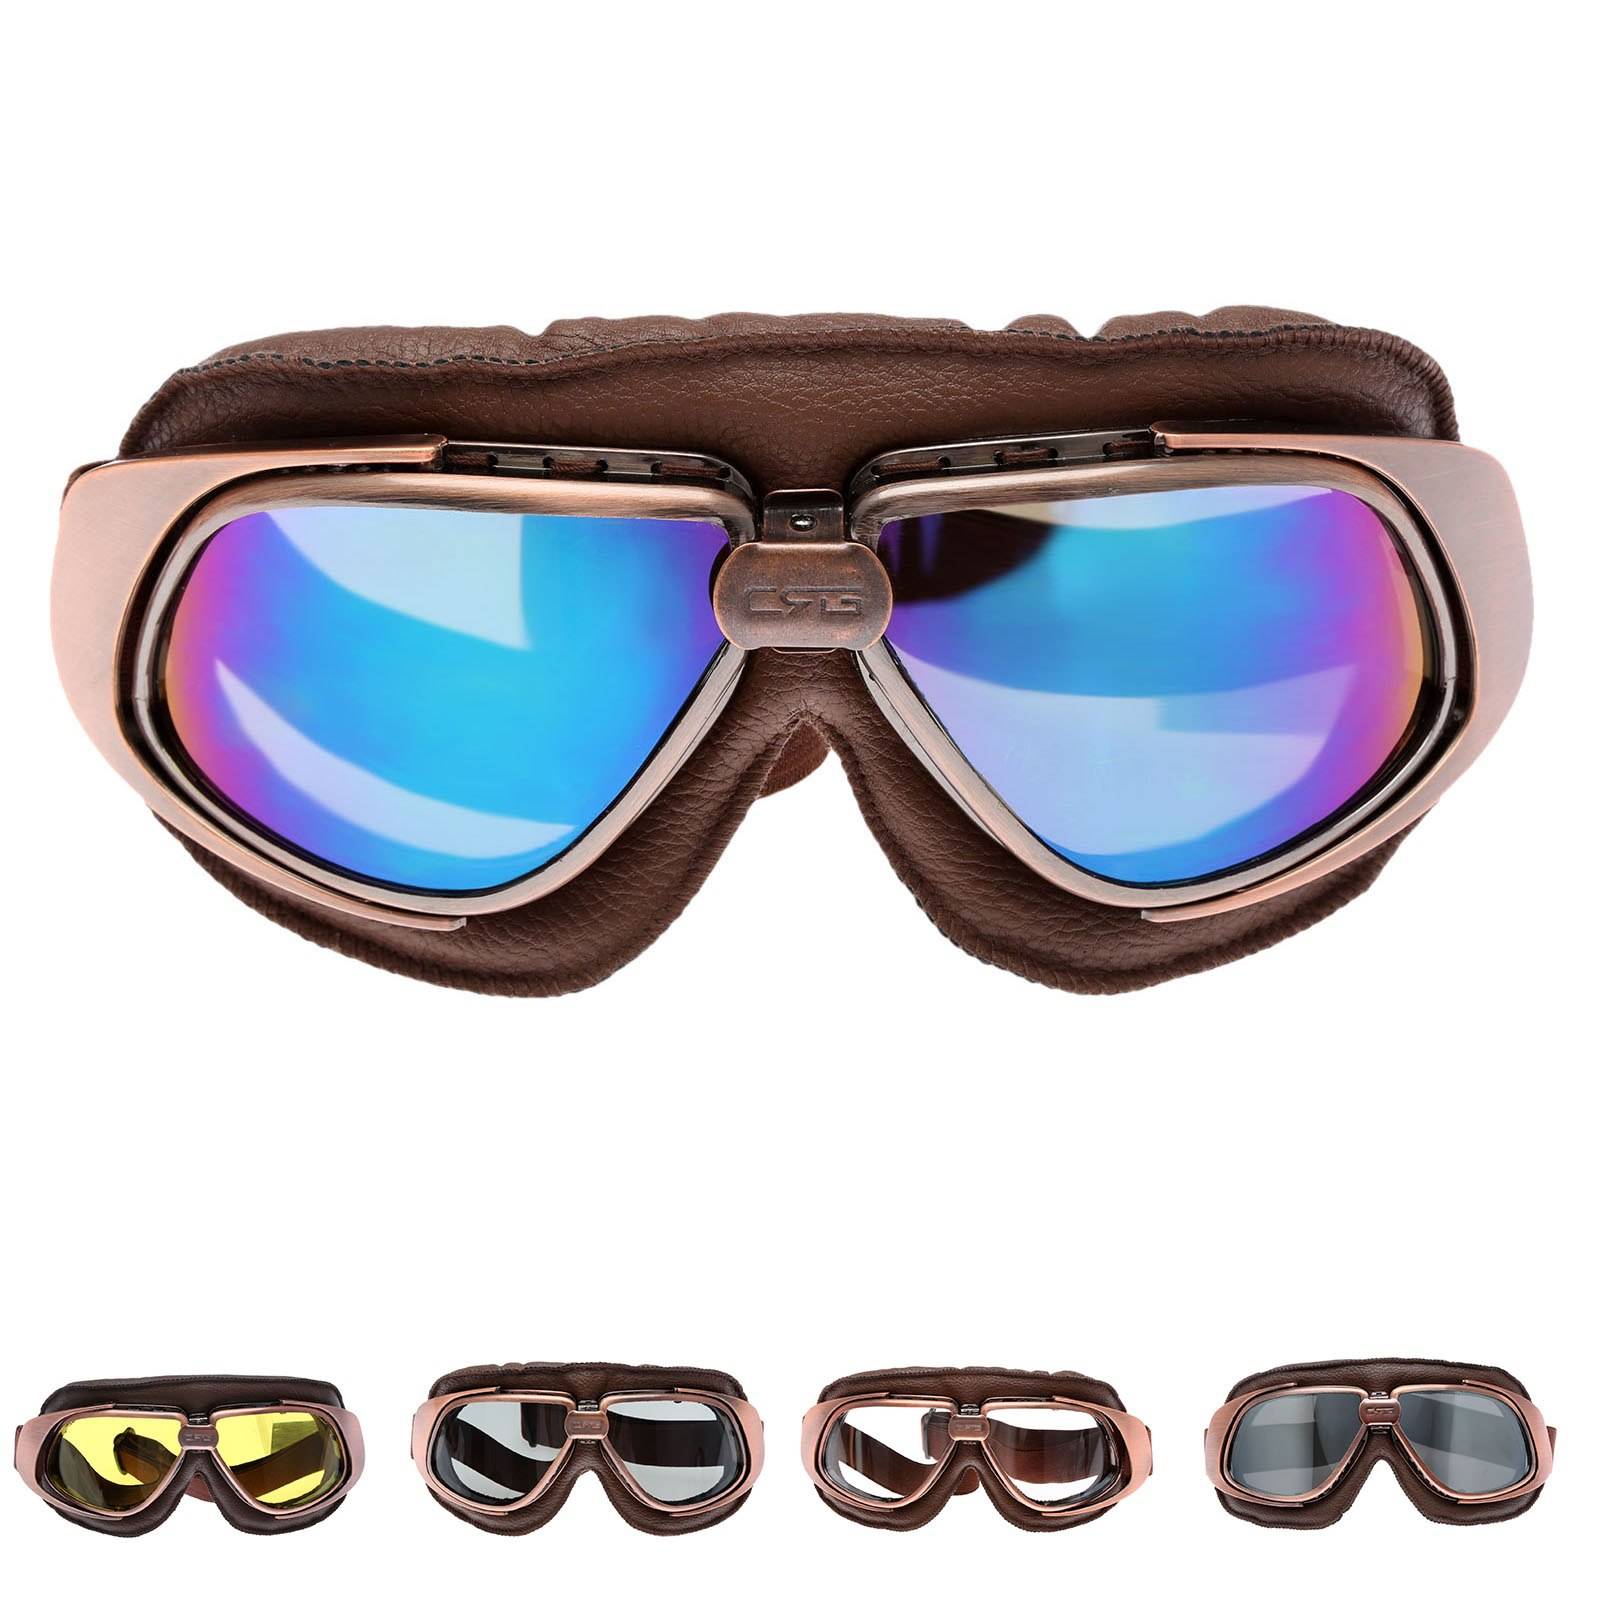 Винтаж мотоцикл очки для стимпанк мотокросс шлем Очки УФ-защита спортивный Лыжный скейт, Солнцезащитные очки для женщин для Harley